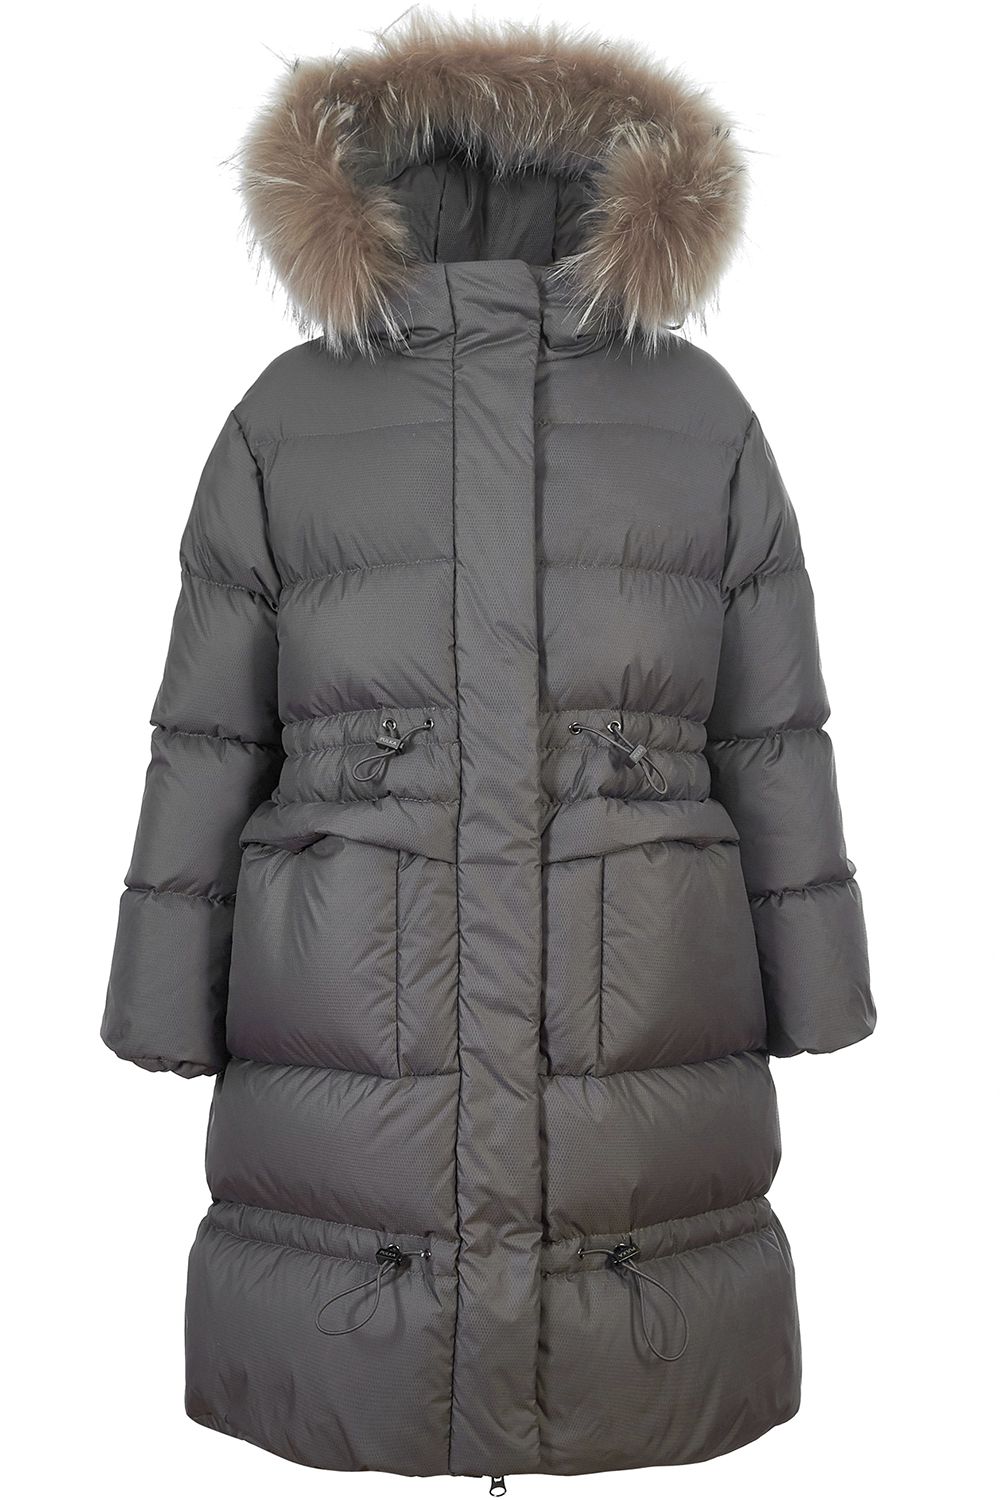 Пальто Pulka, размер 152, цвет серый PUFWG-926-20307-622 - фото 1